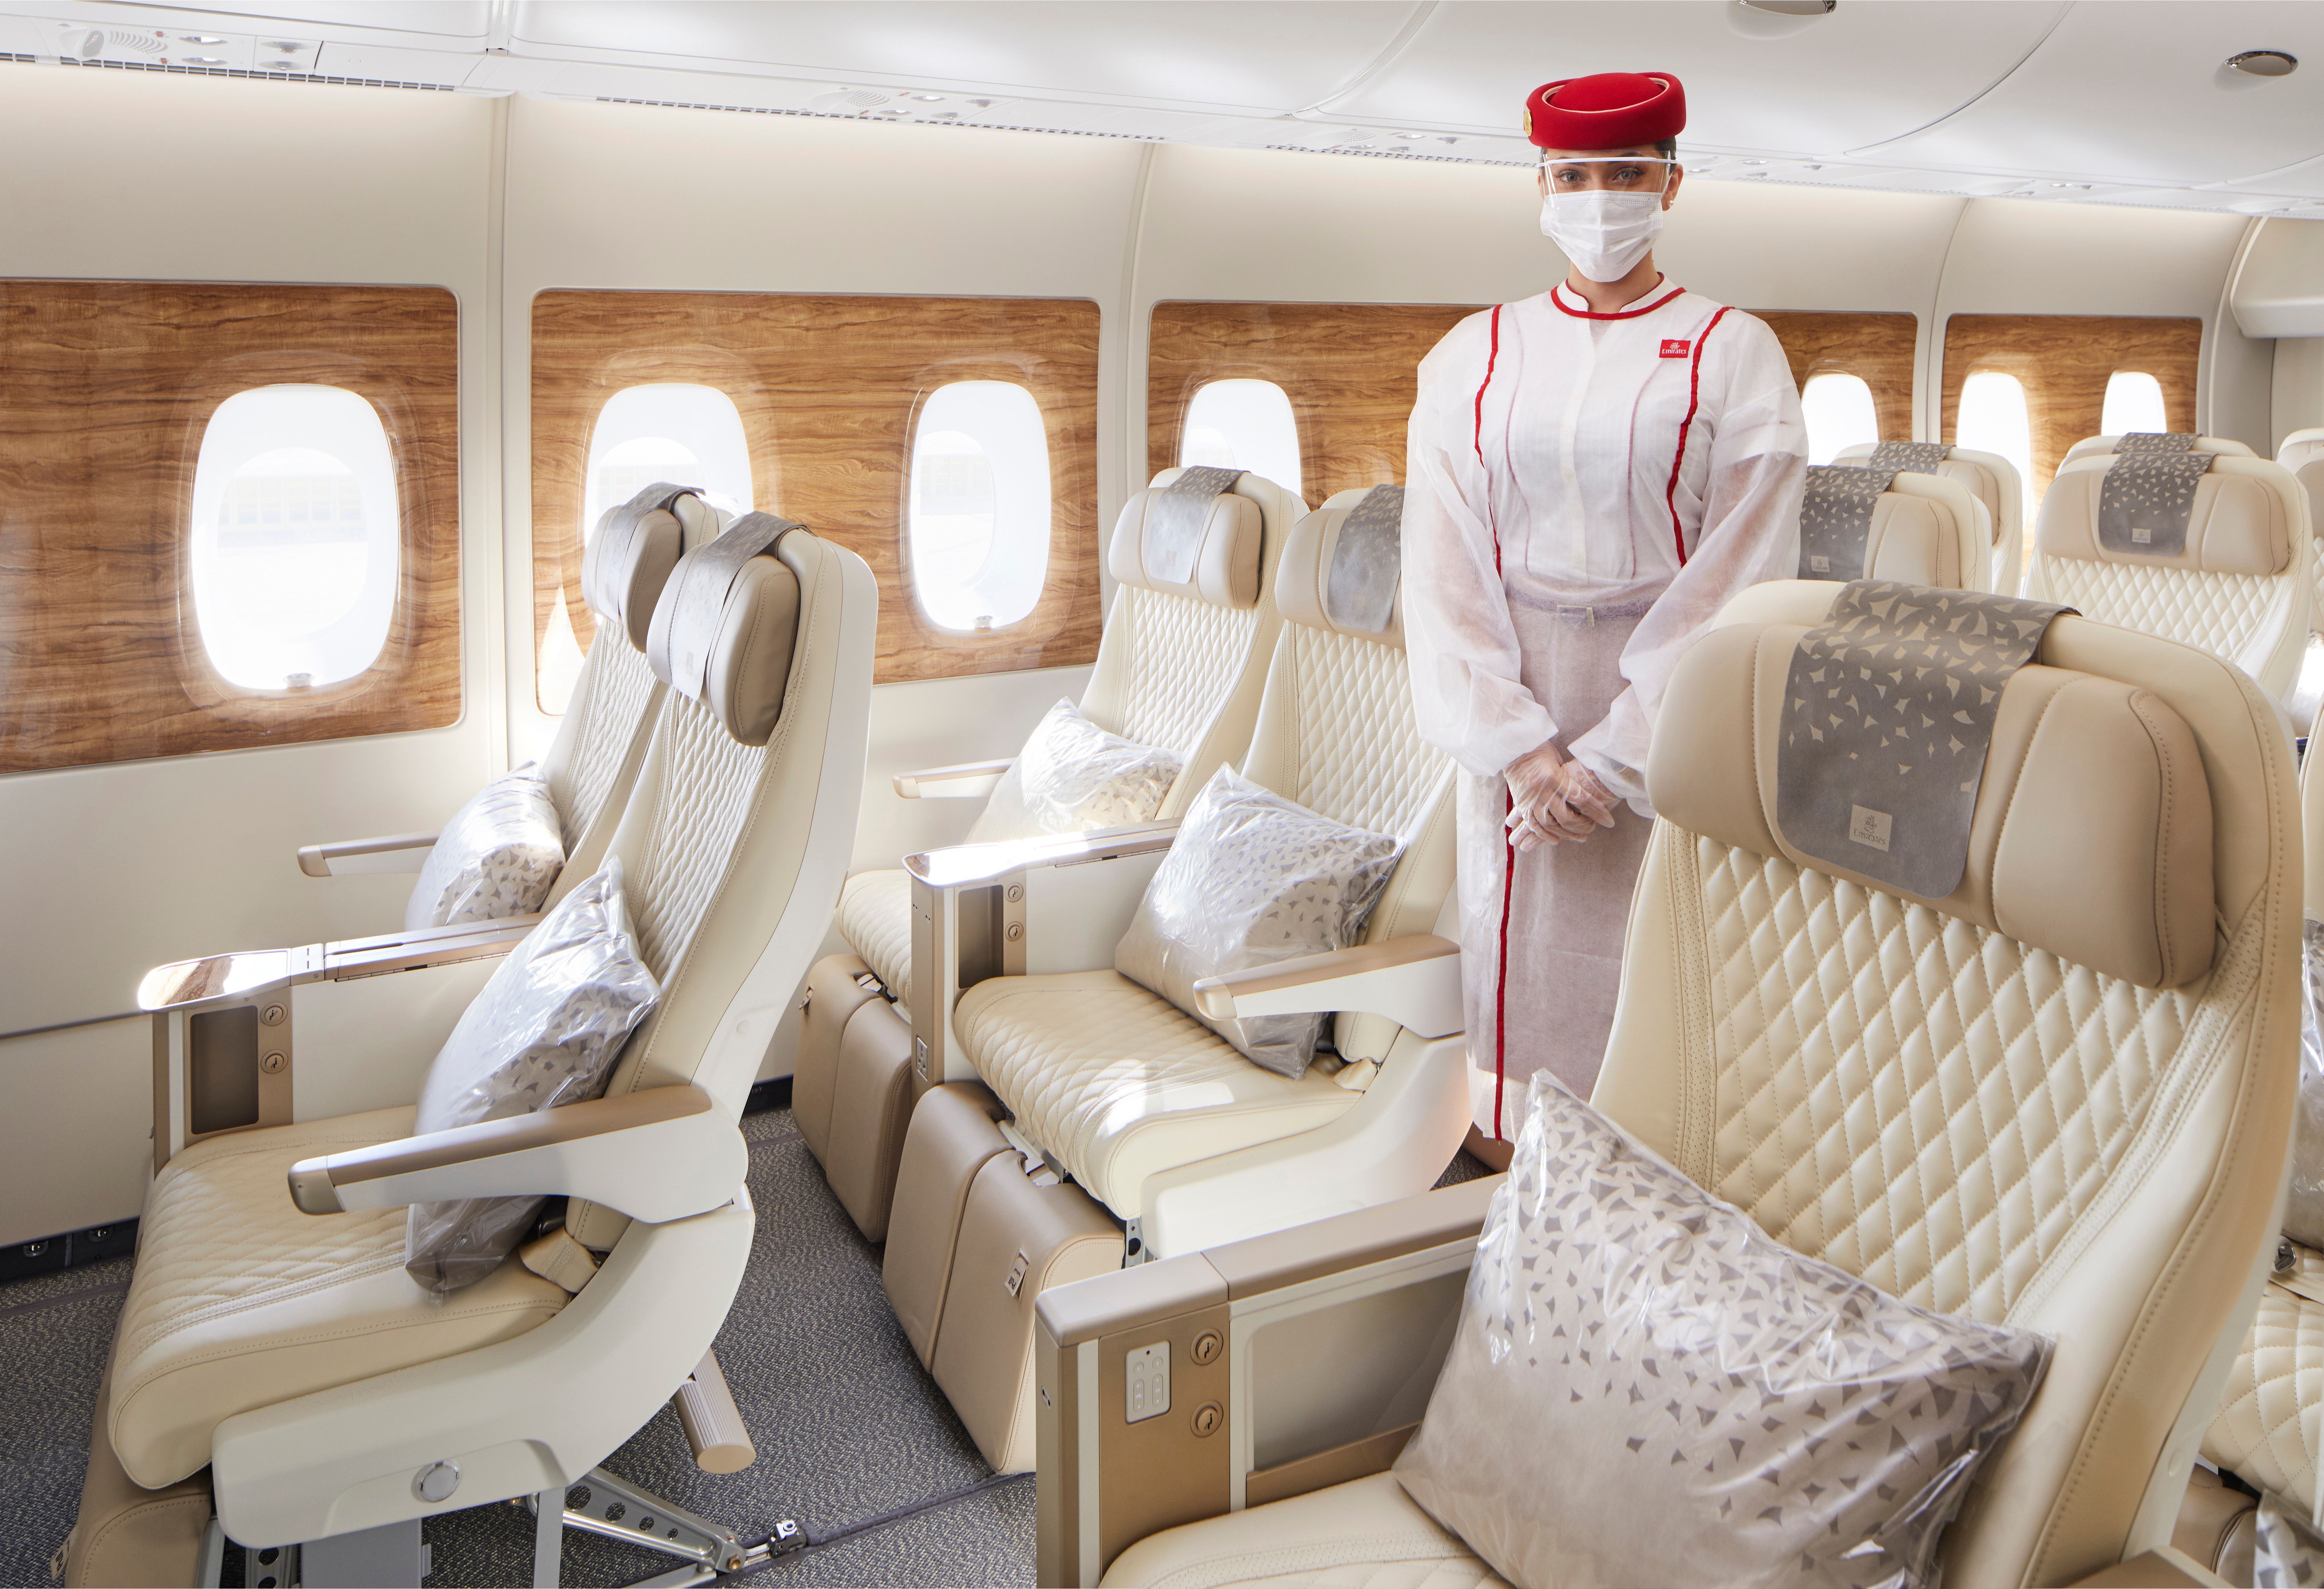 Emirates Premium Economy cabin.